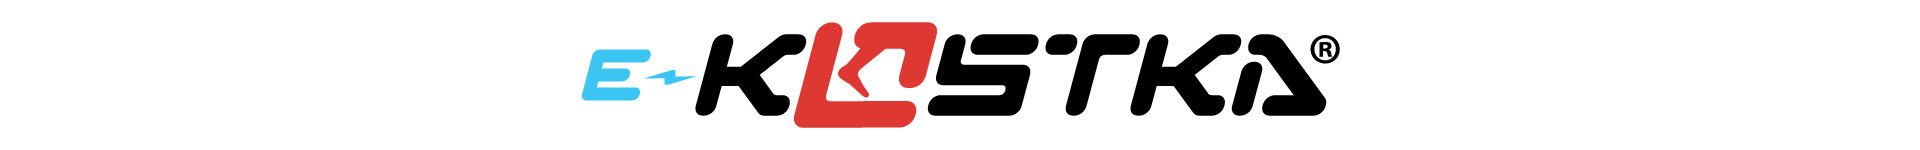 ekostka-logo.jpg